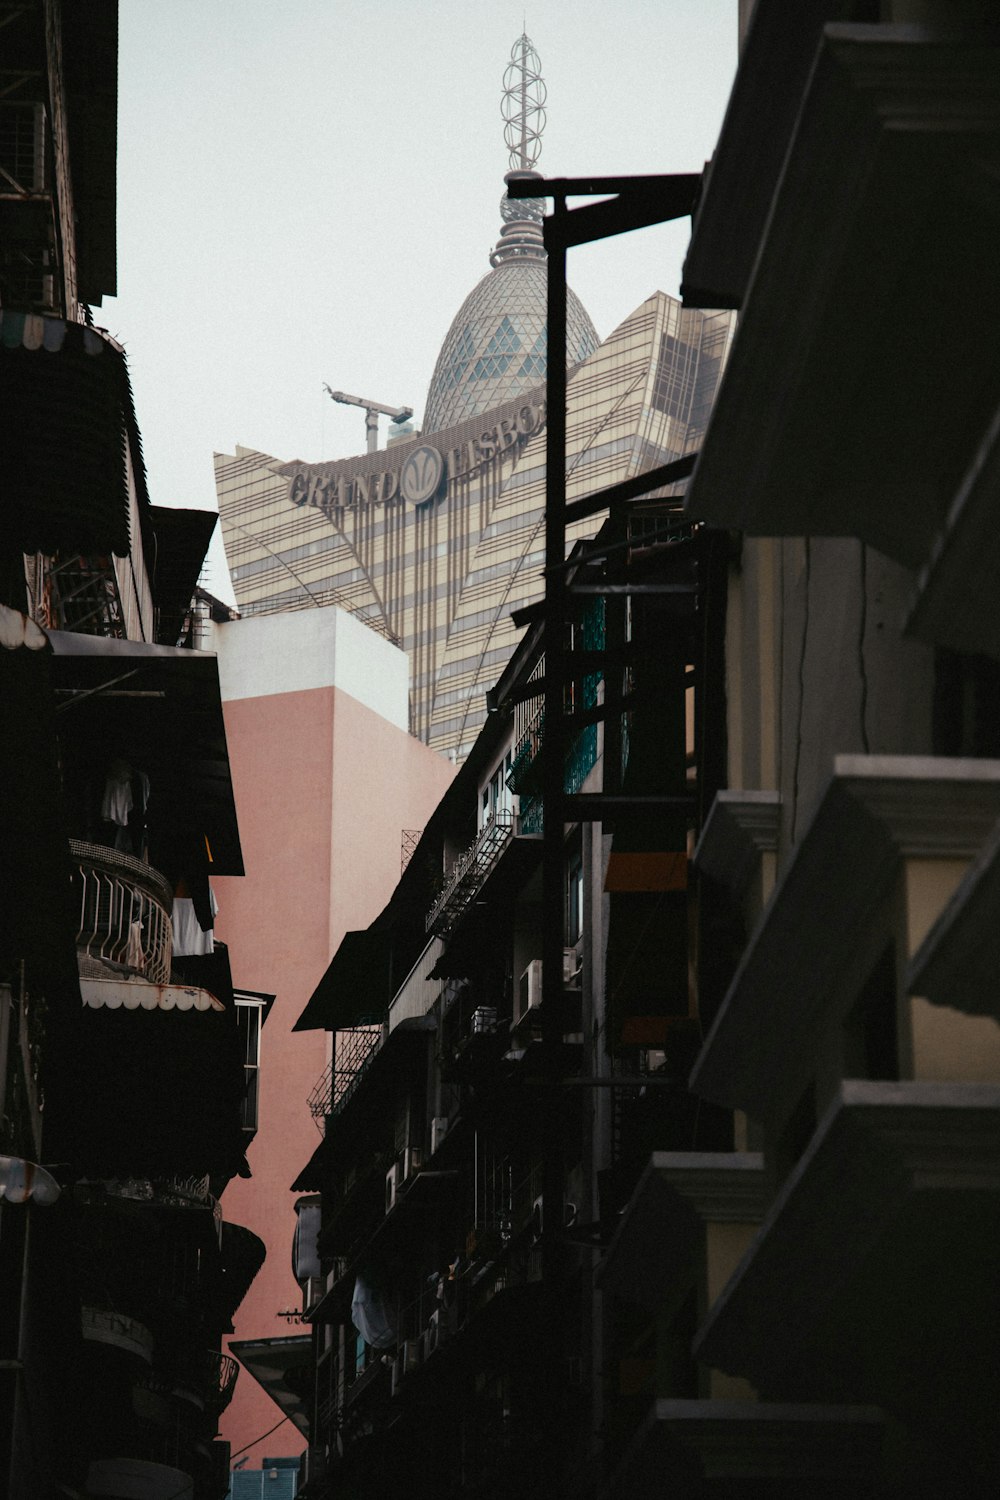 uma rua da cidade com edifícios e uma torre do relógio ao fundo